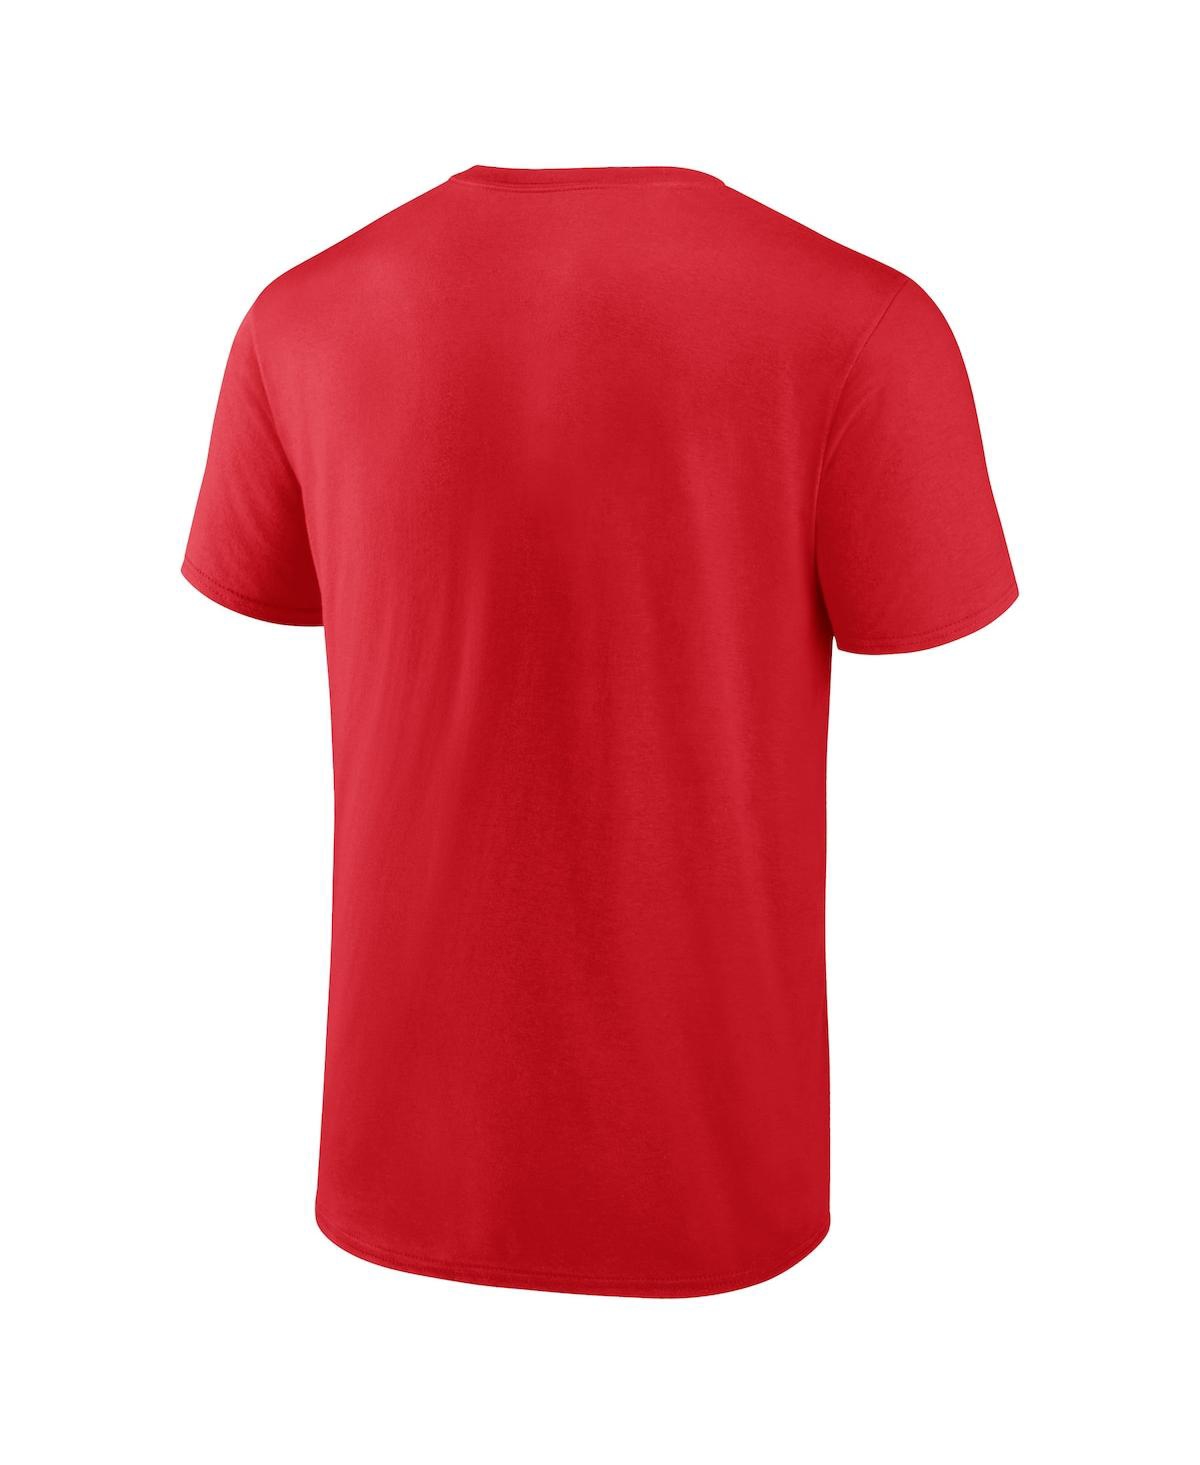 Atlanta Braves Fanatics Branded Official Wordmark T-Shirt - Navy